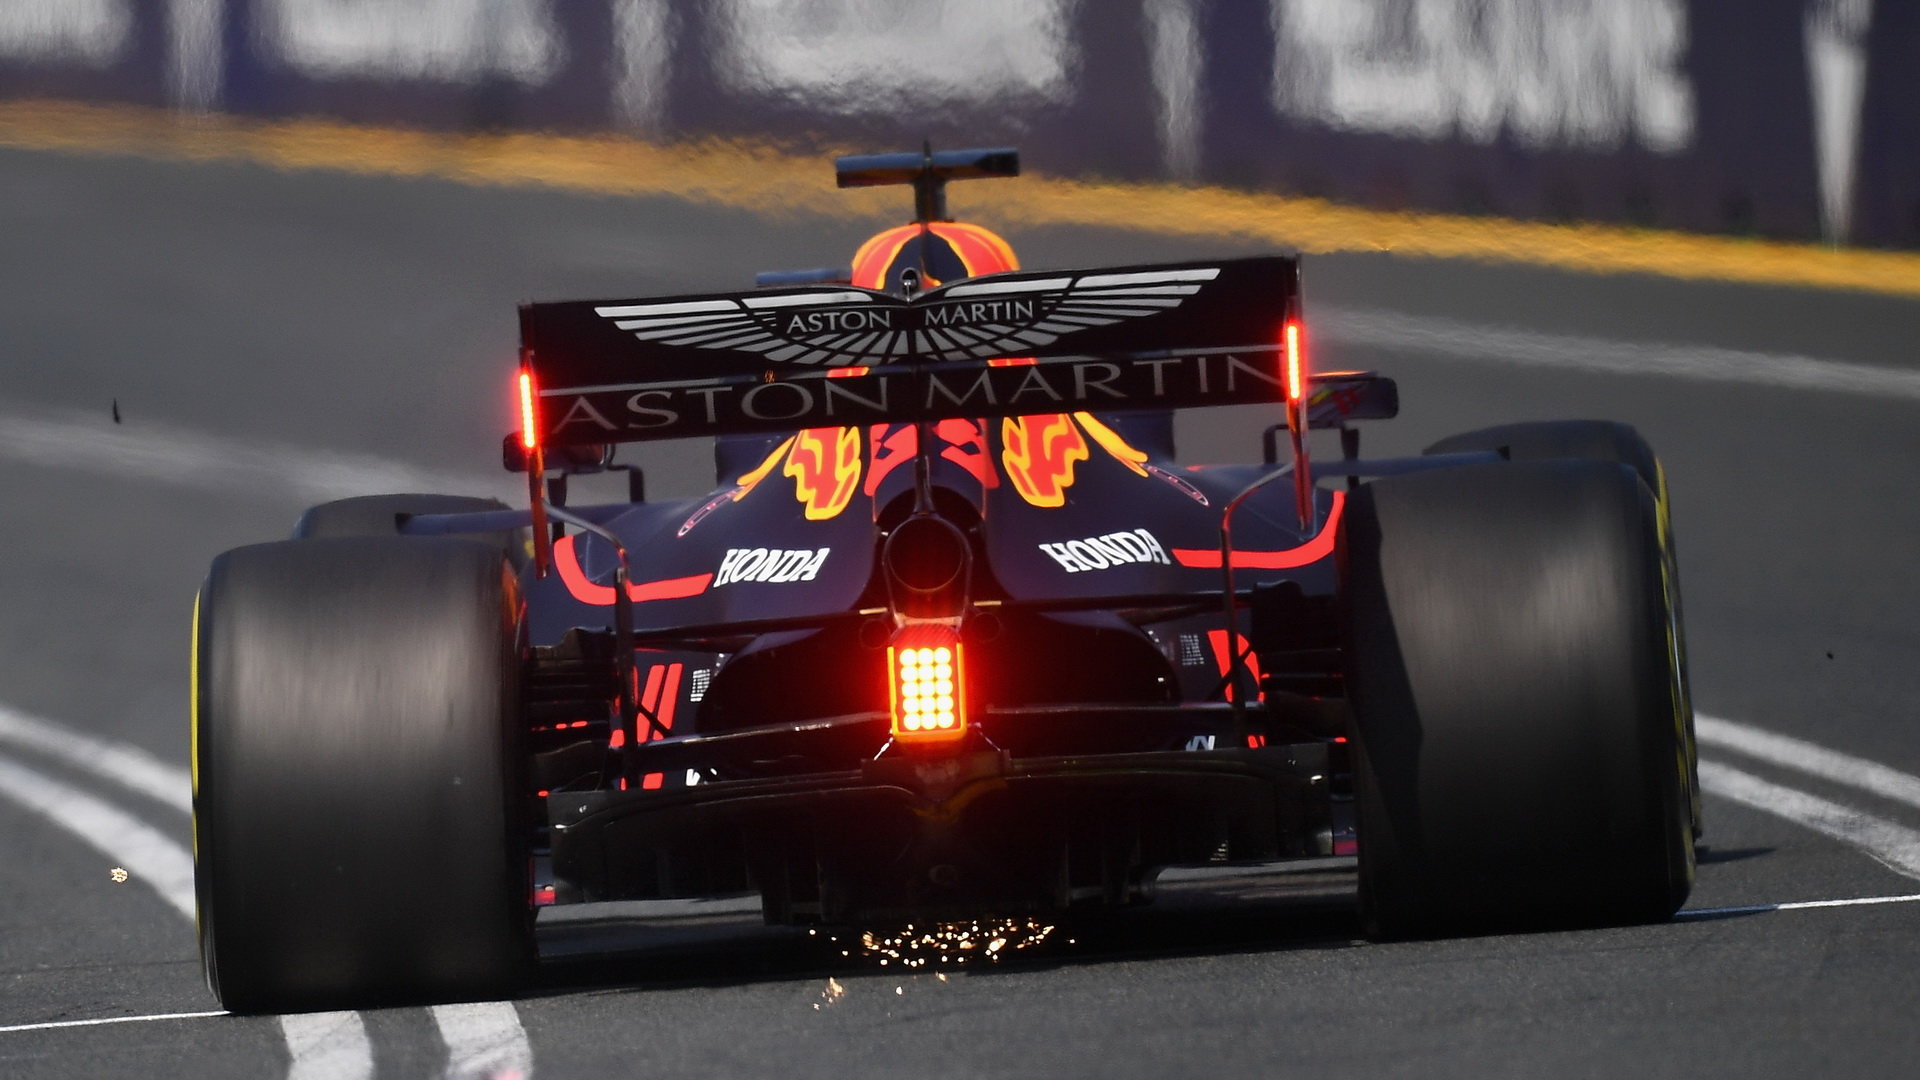 Max Verstappen v kvalifikaci v Melbourne